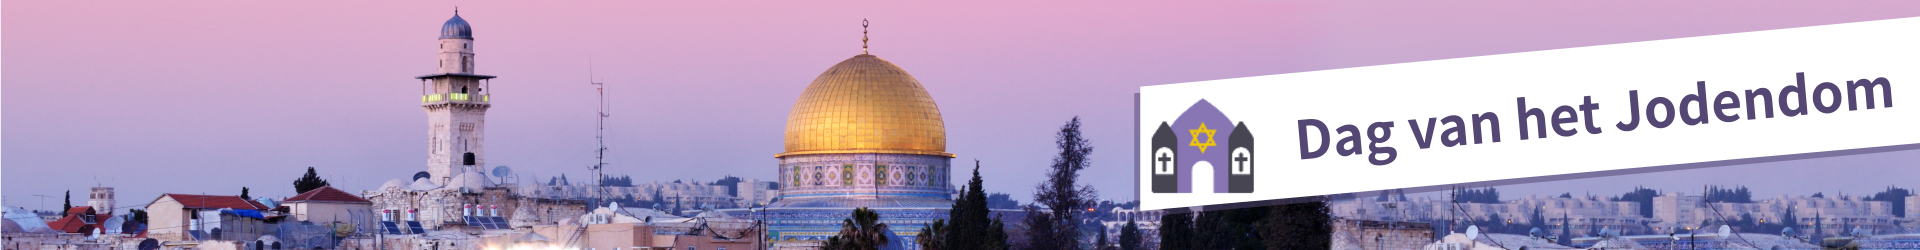 Folder Dag van het Jodendom 2015